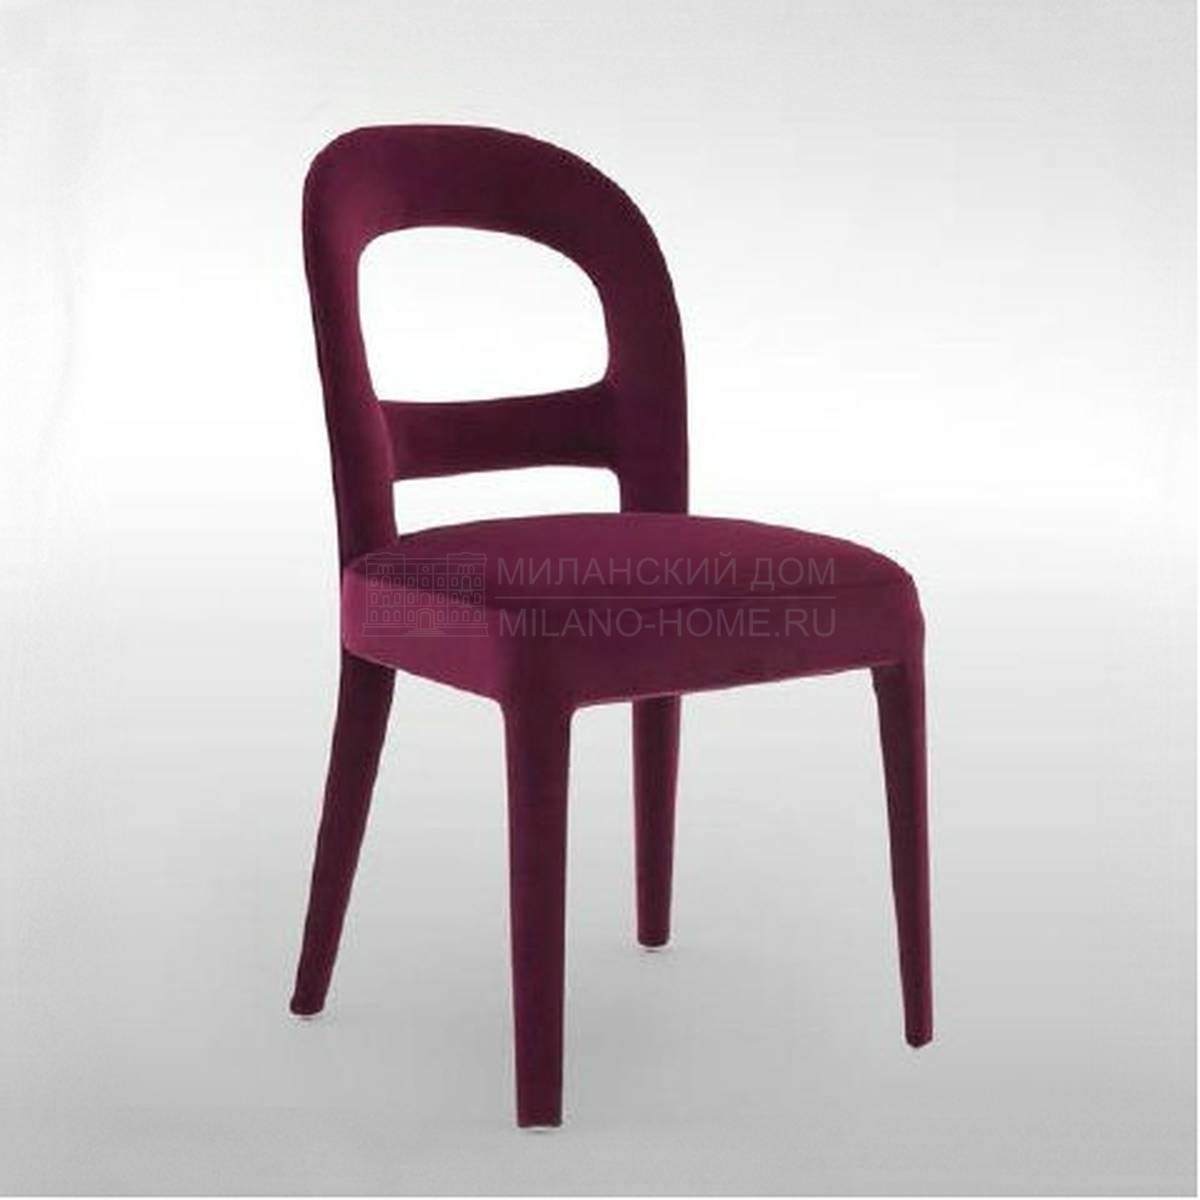 Стул Iris chair из Италии фабрики FENDI Casa